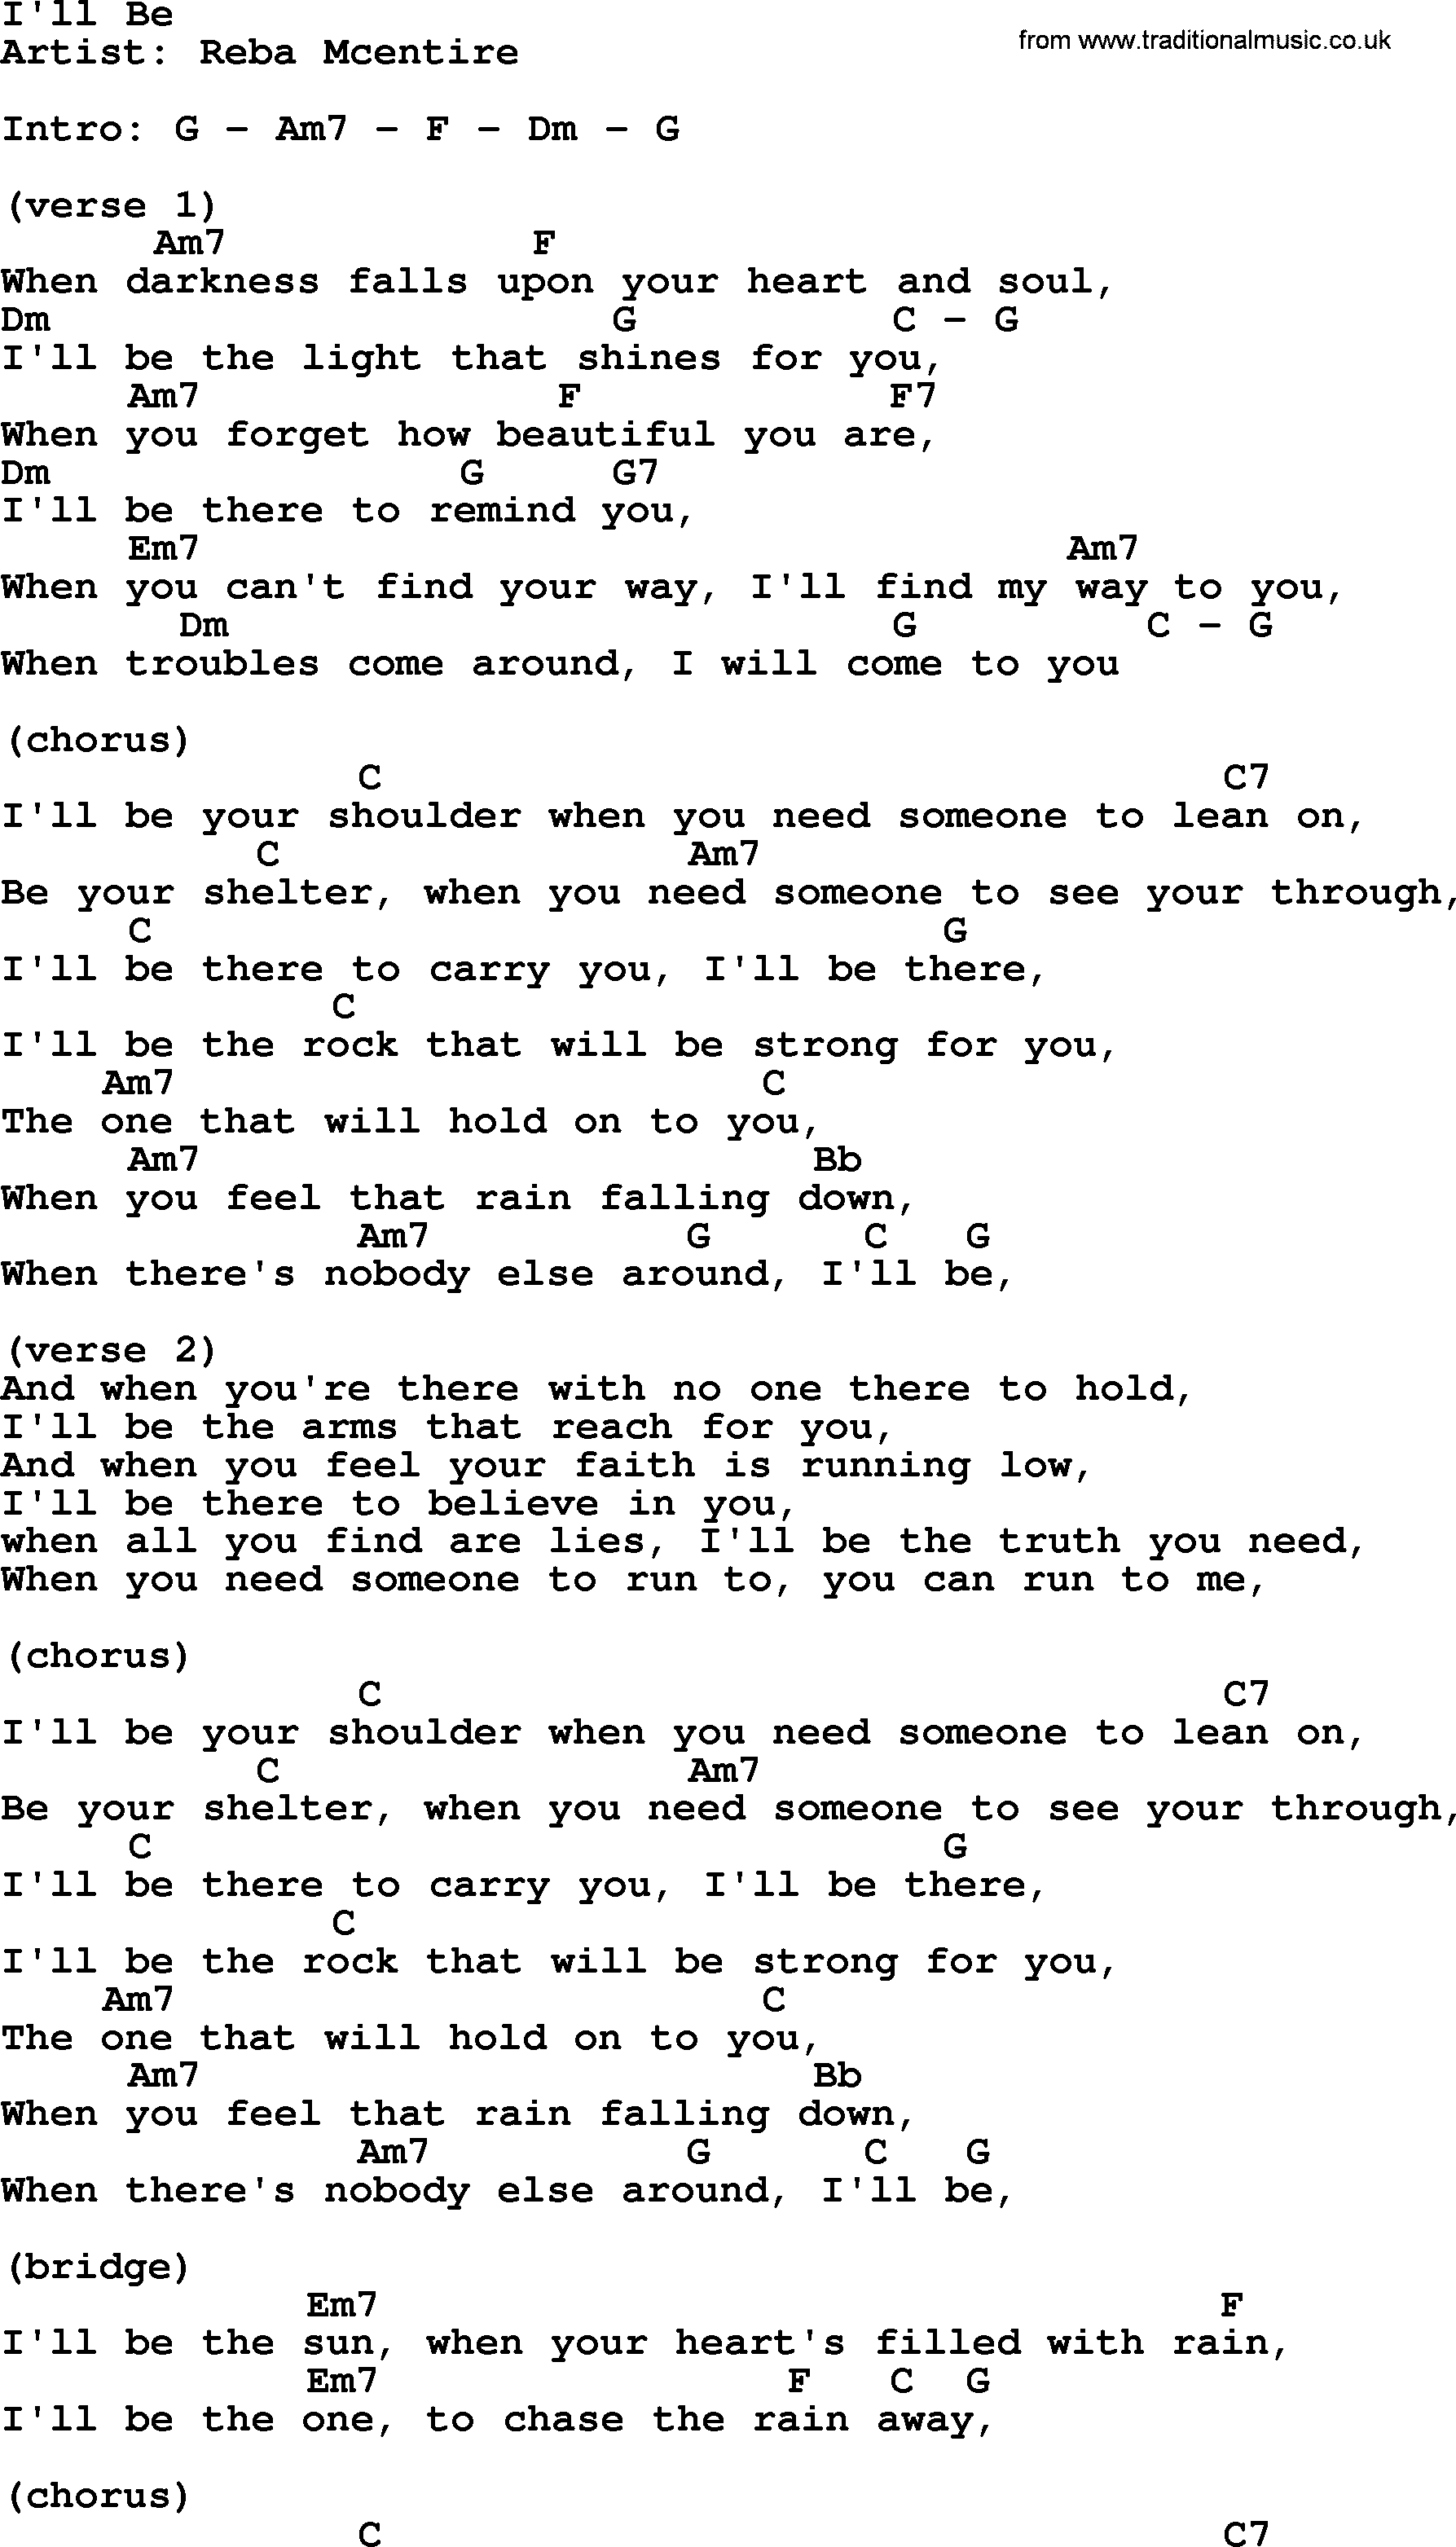 Reba McEntire song: I'll Be, lyrics and chords